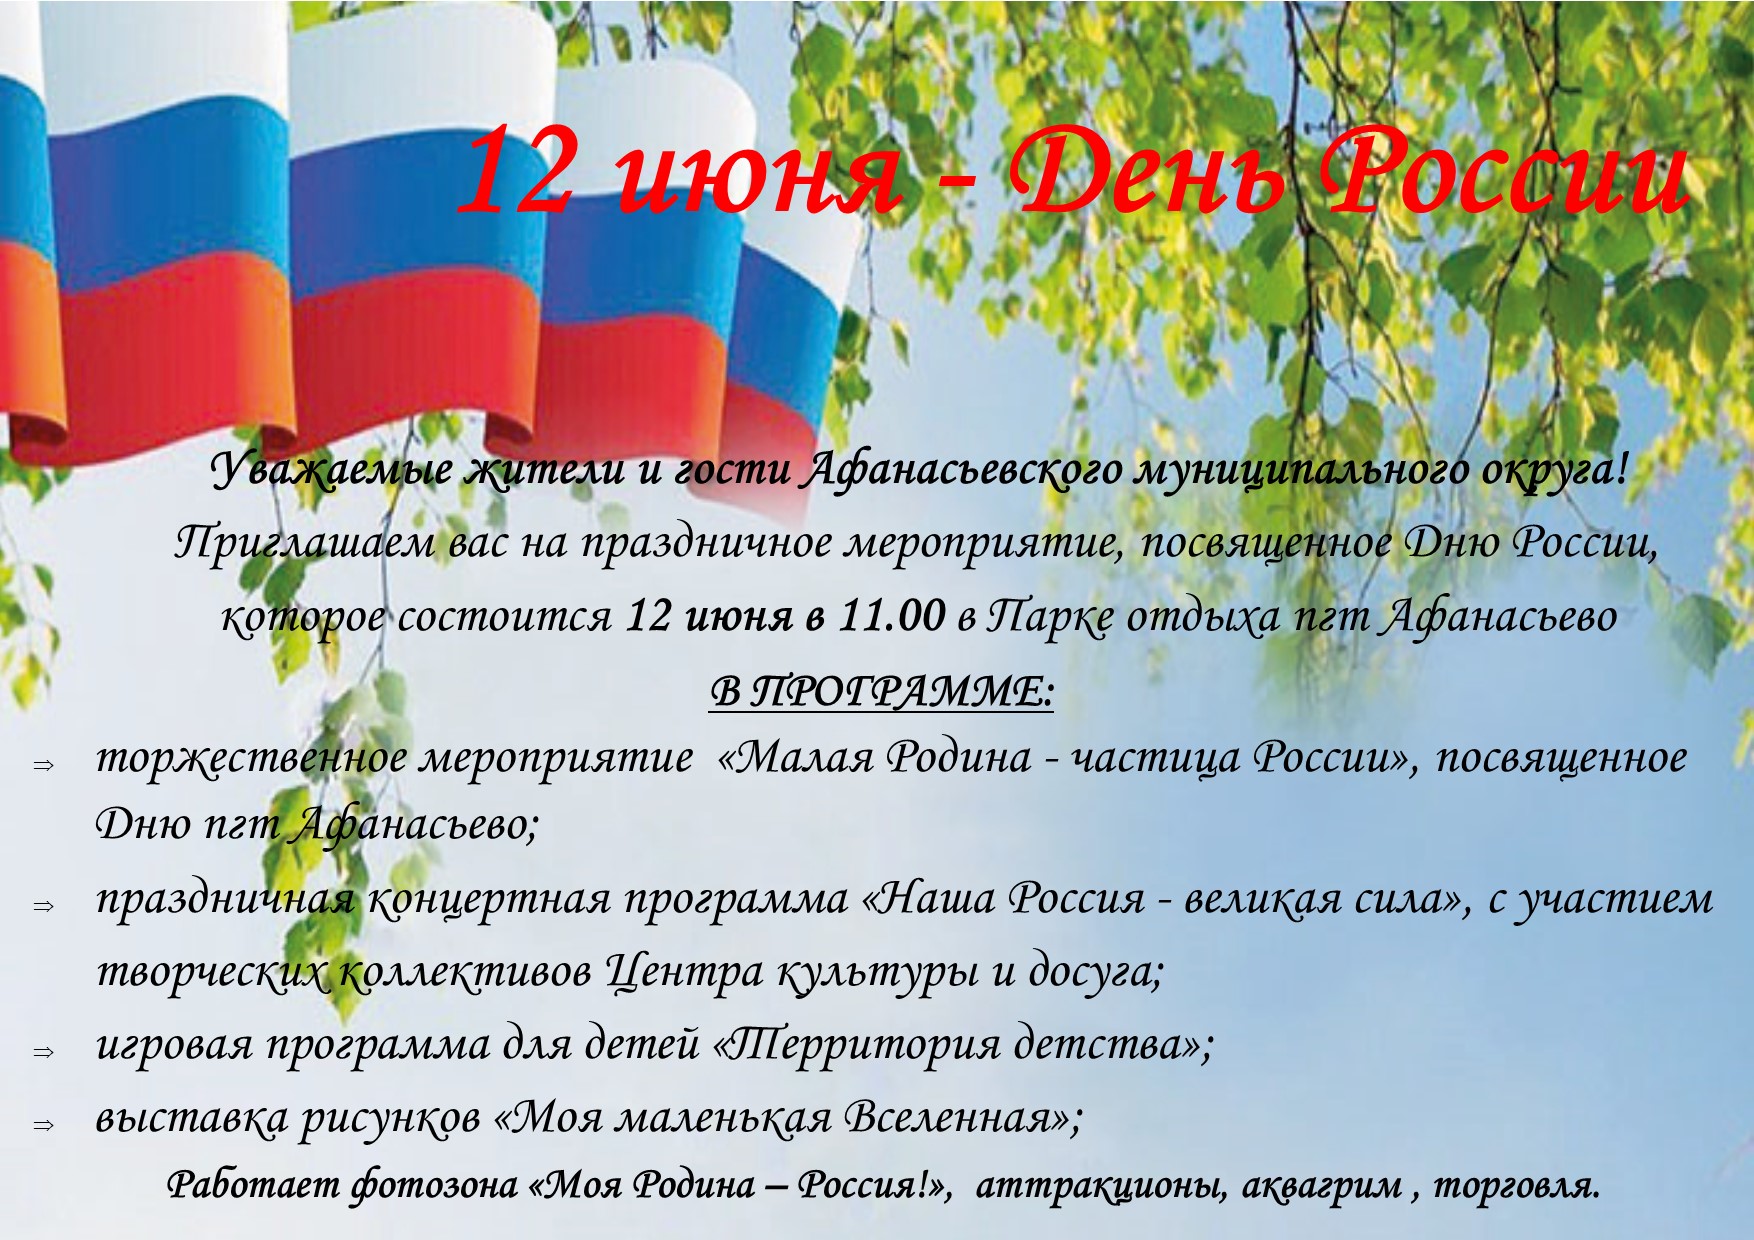 Праздничное мероприятие, посвященное Дню России и Дню пгт Афанасьево.